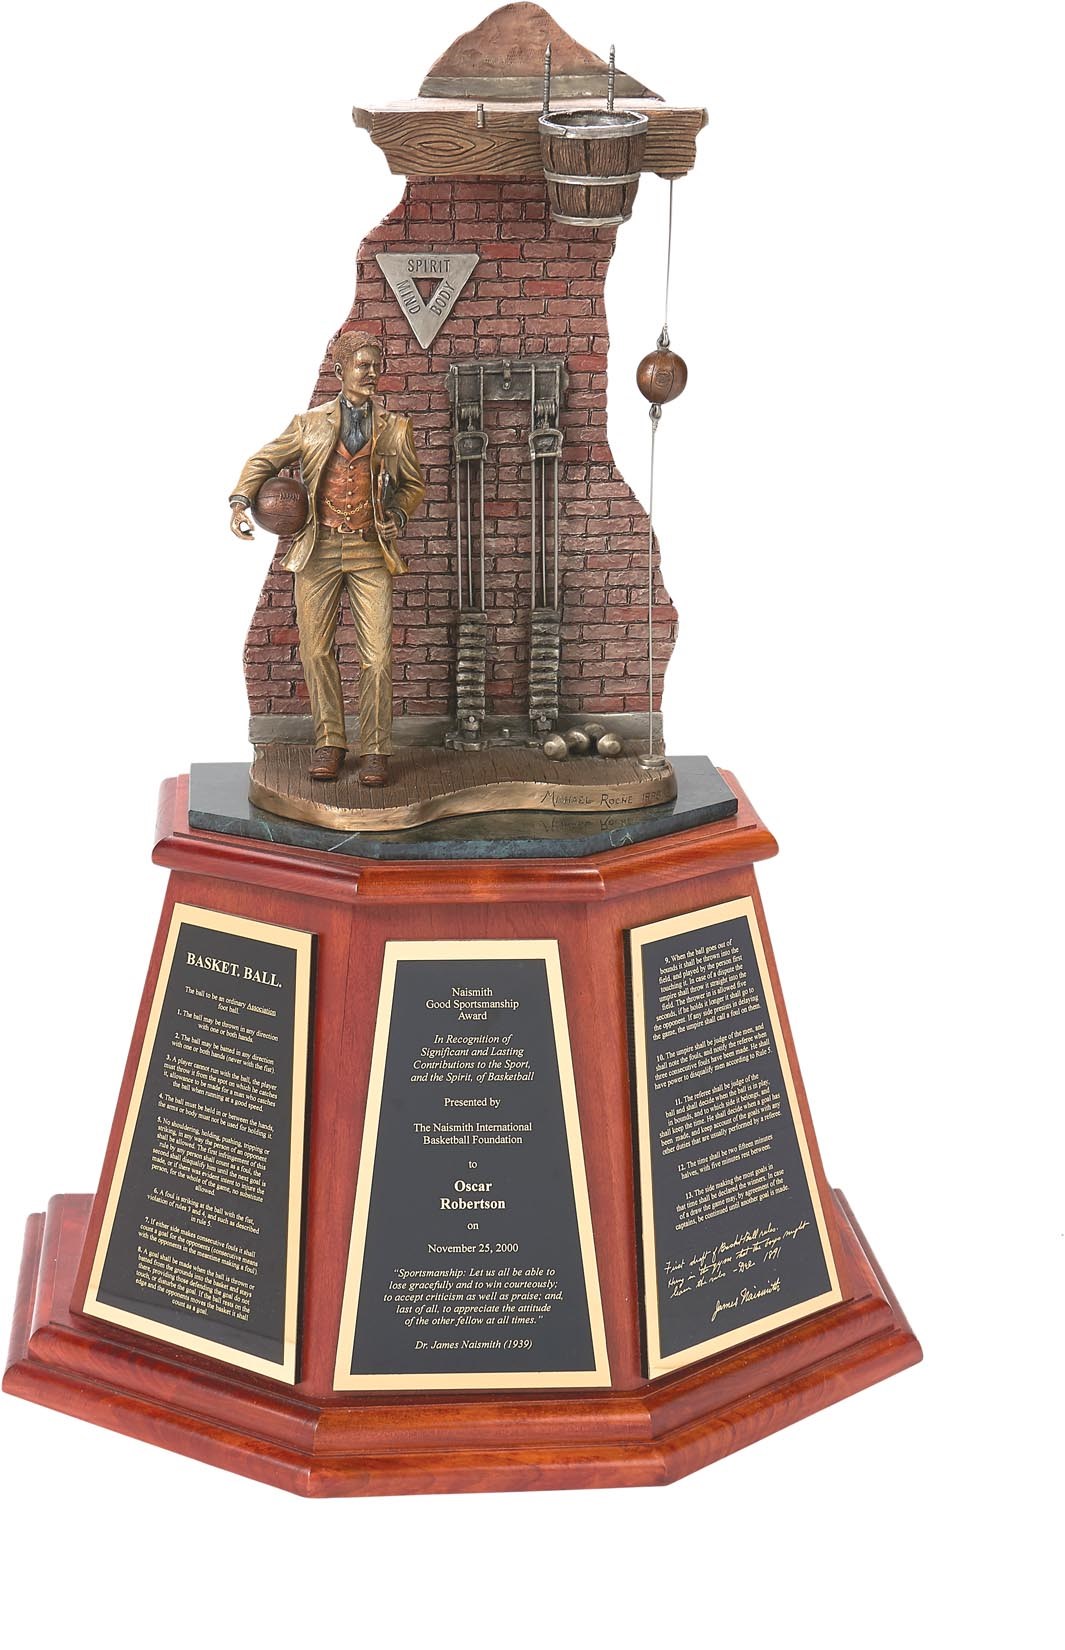 The Oscar Robertson Collection - Naismith Good Sportsmanship Award Presented to Oscar Robertson